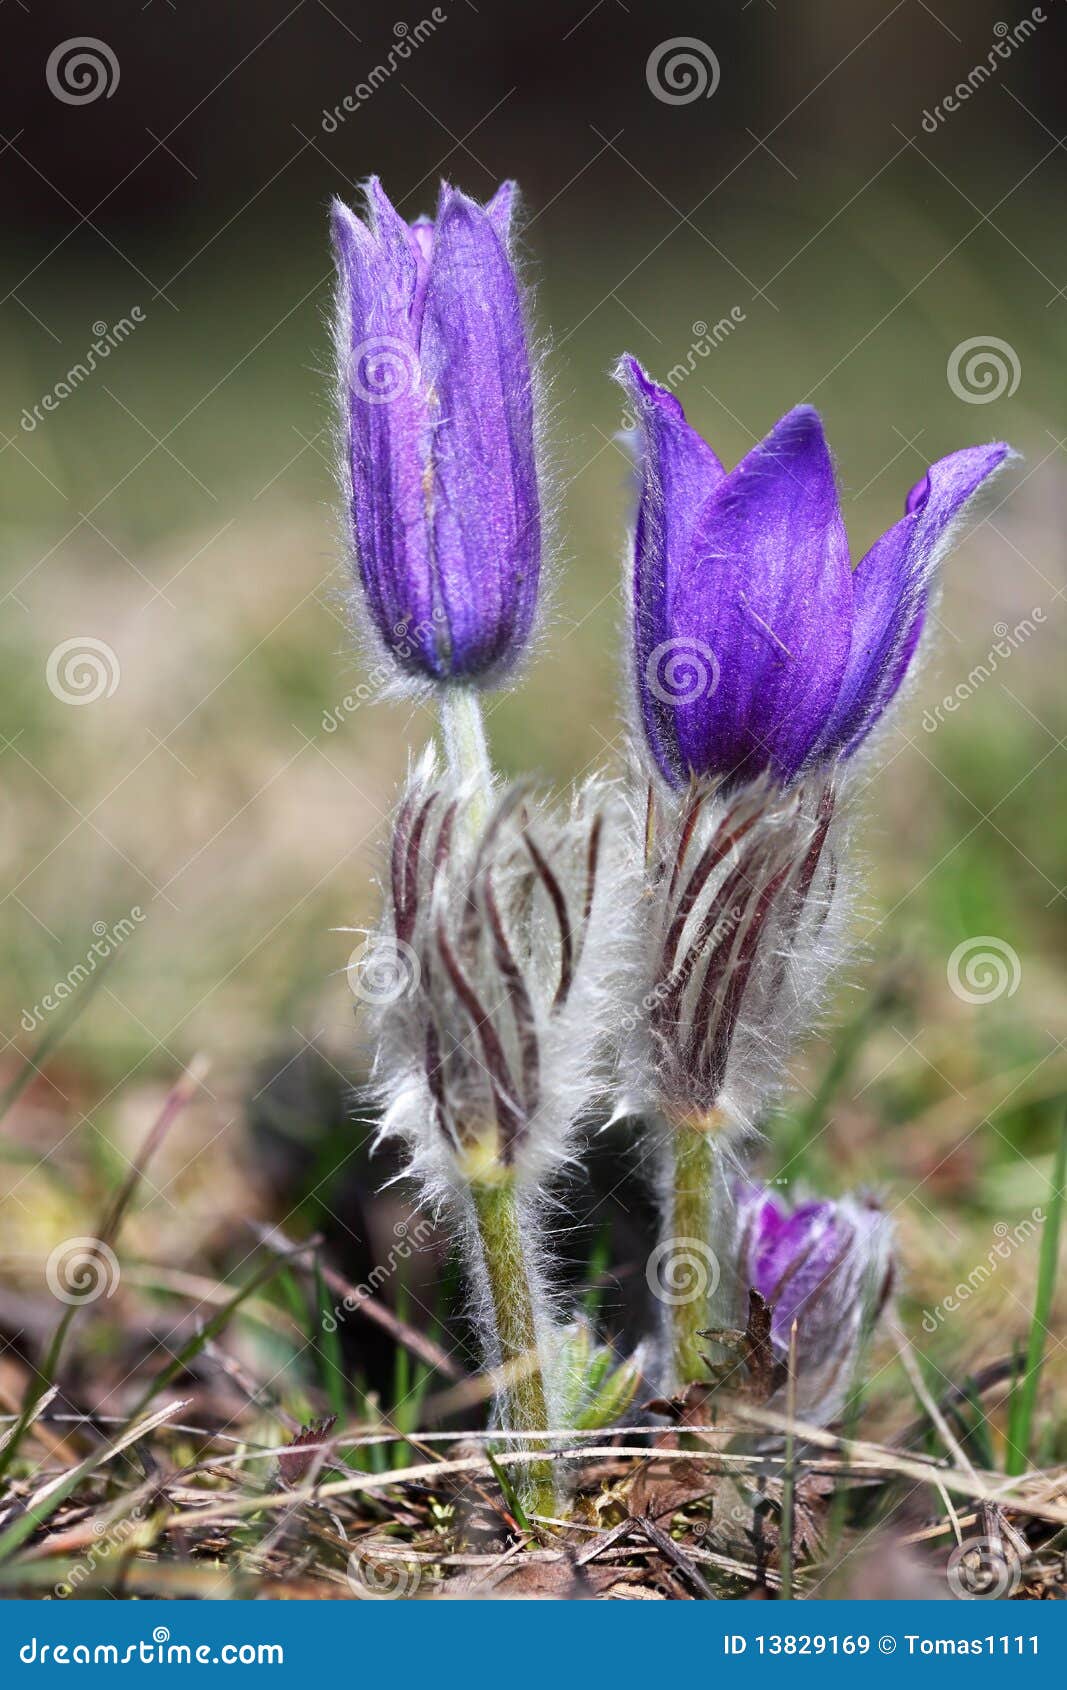 valuable purple flower